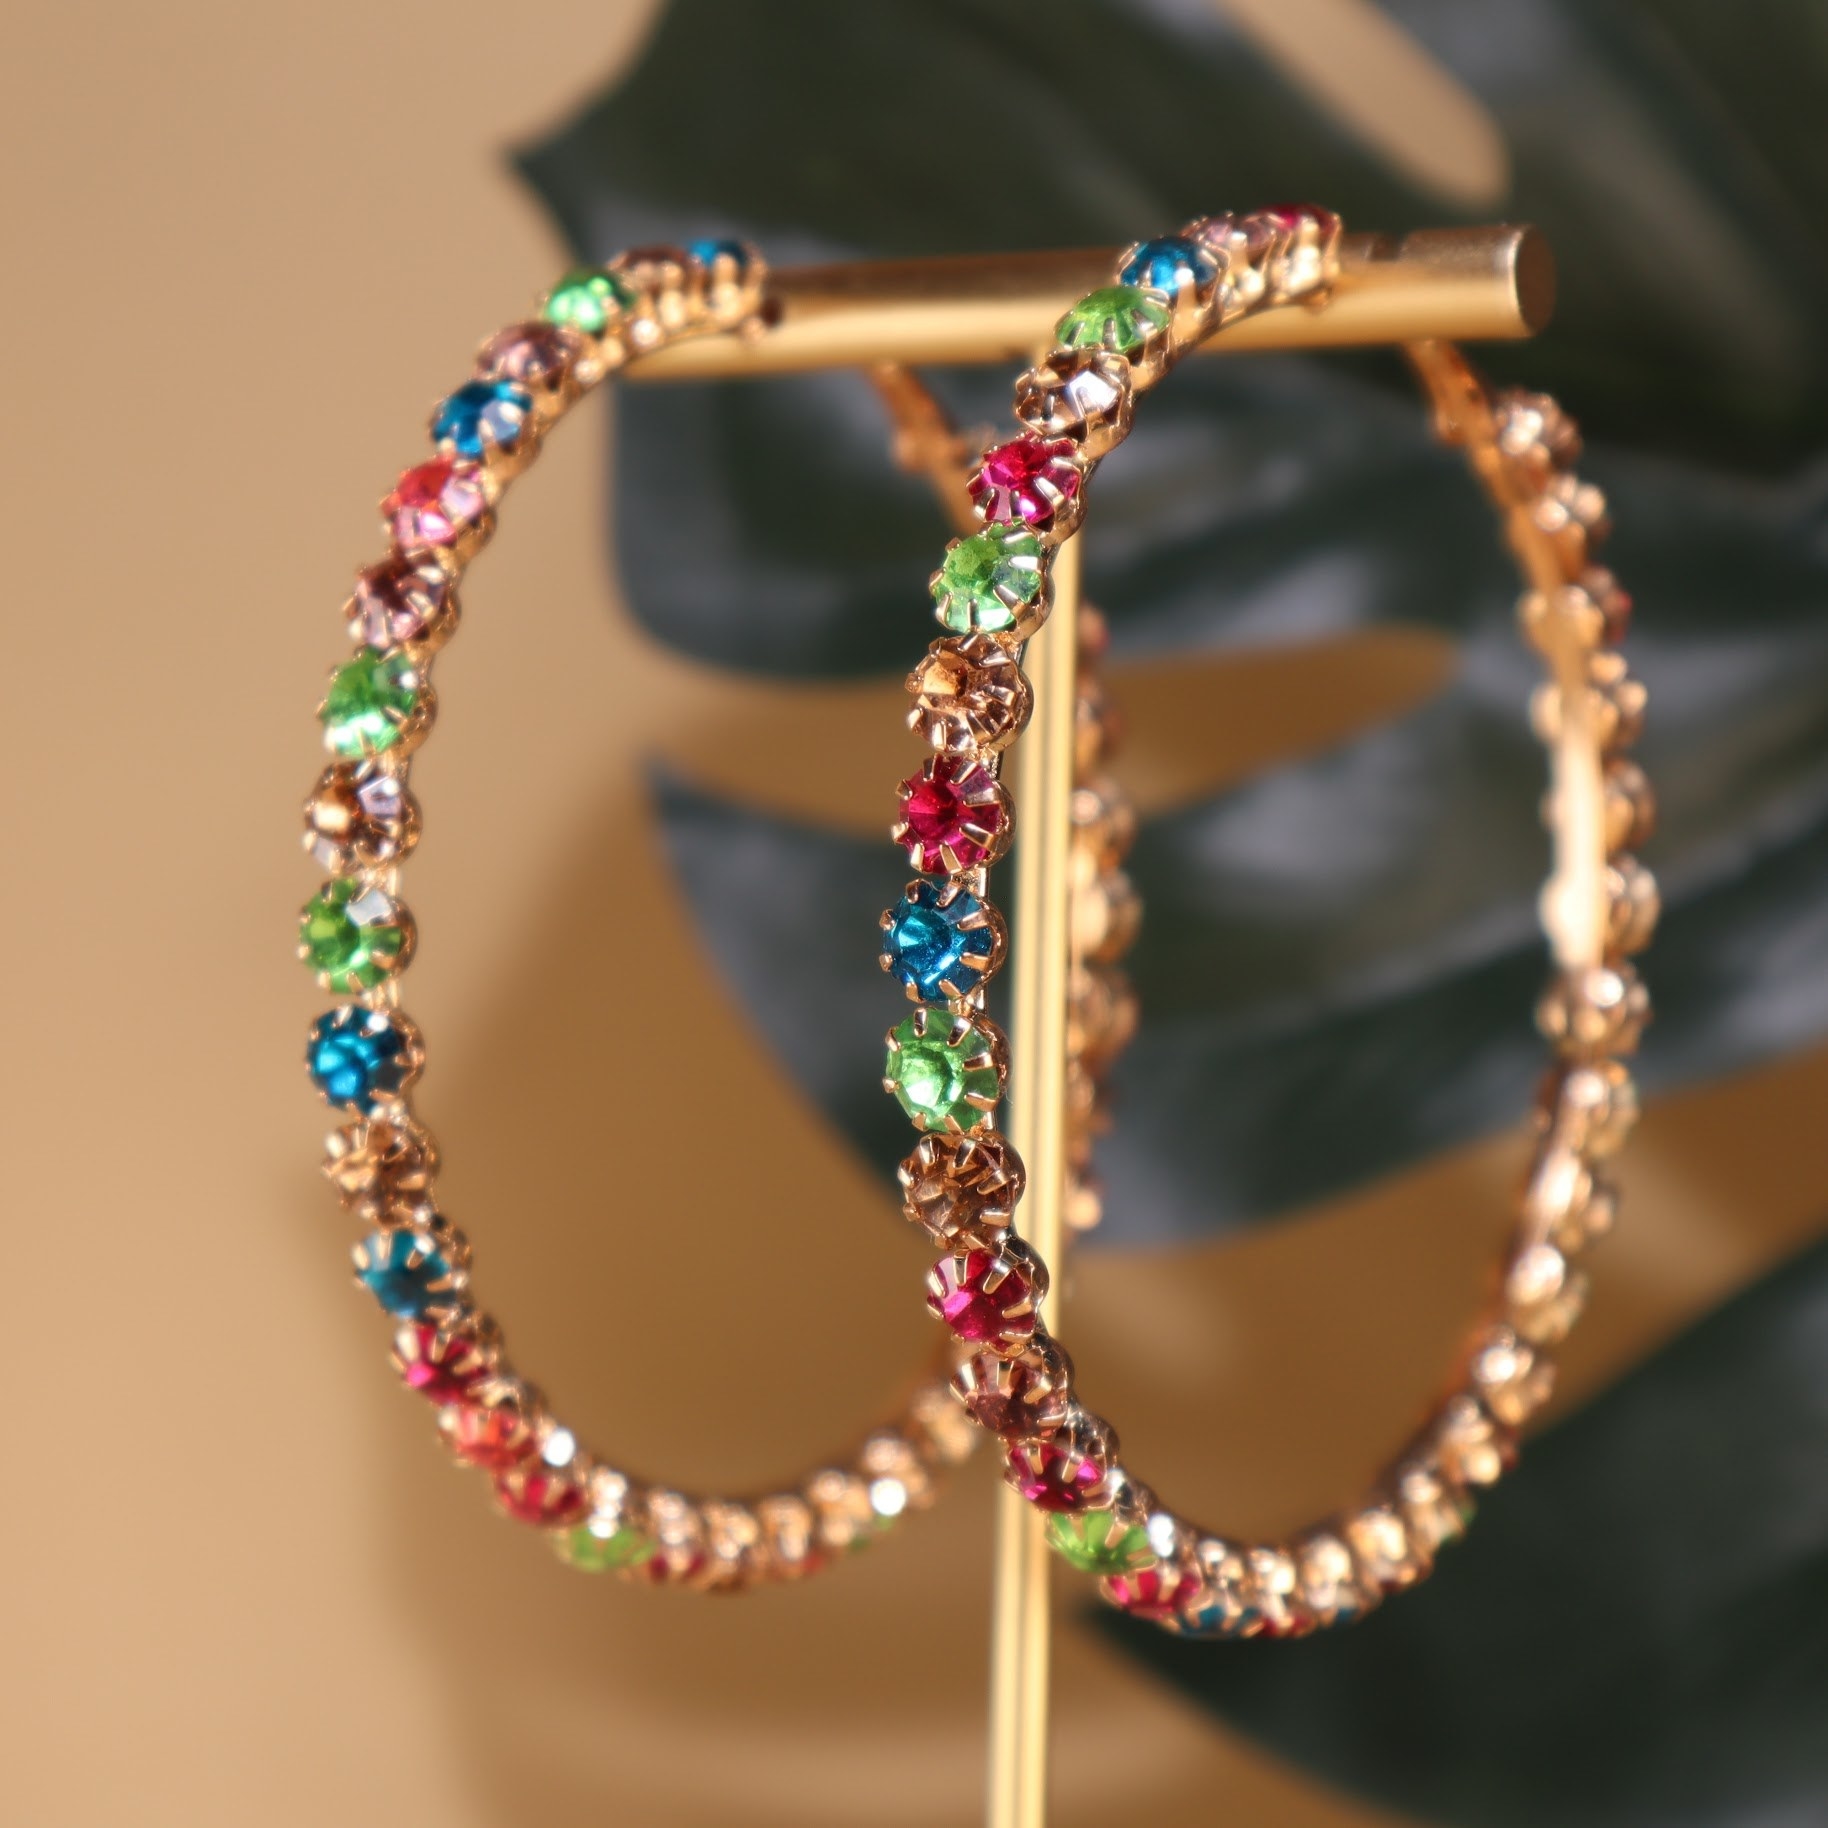 Hoop earrings with colorful gemstones.